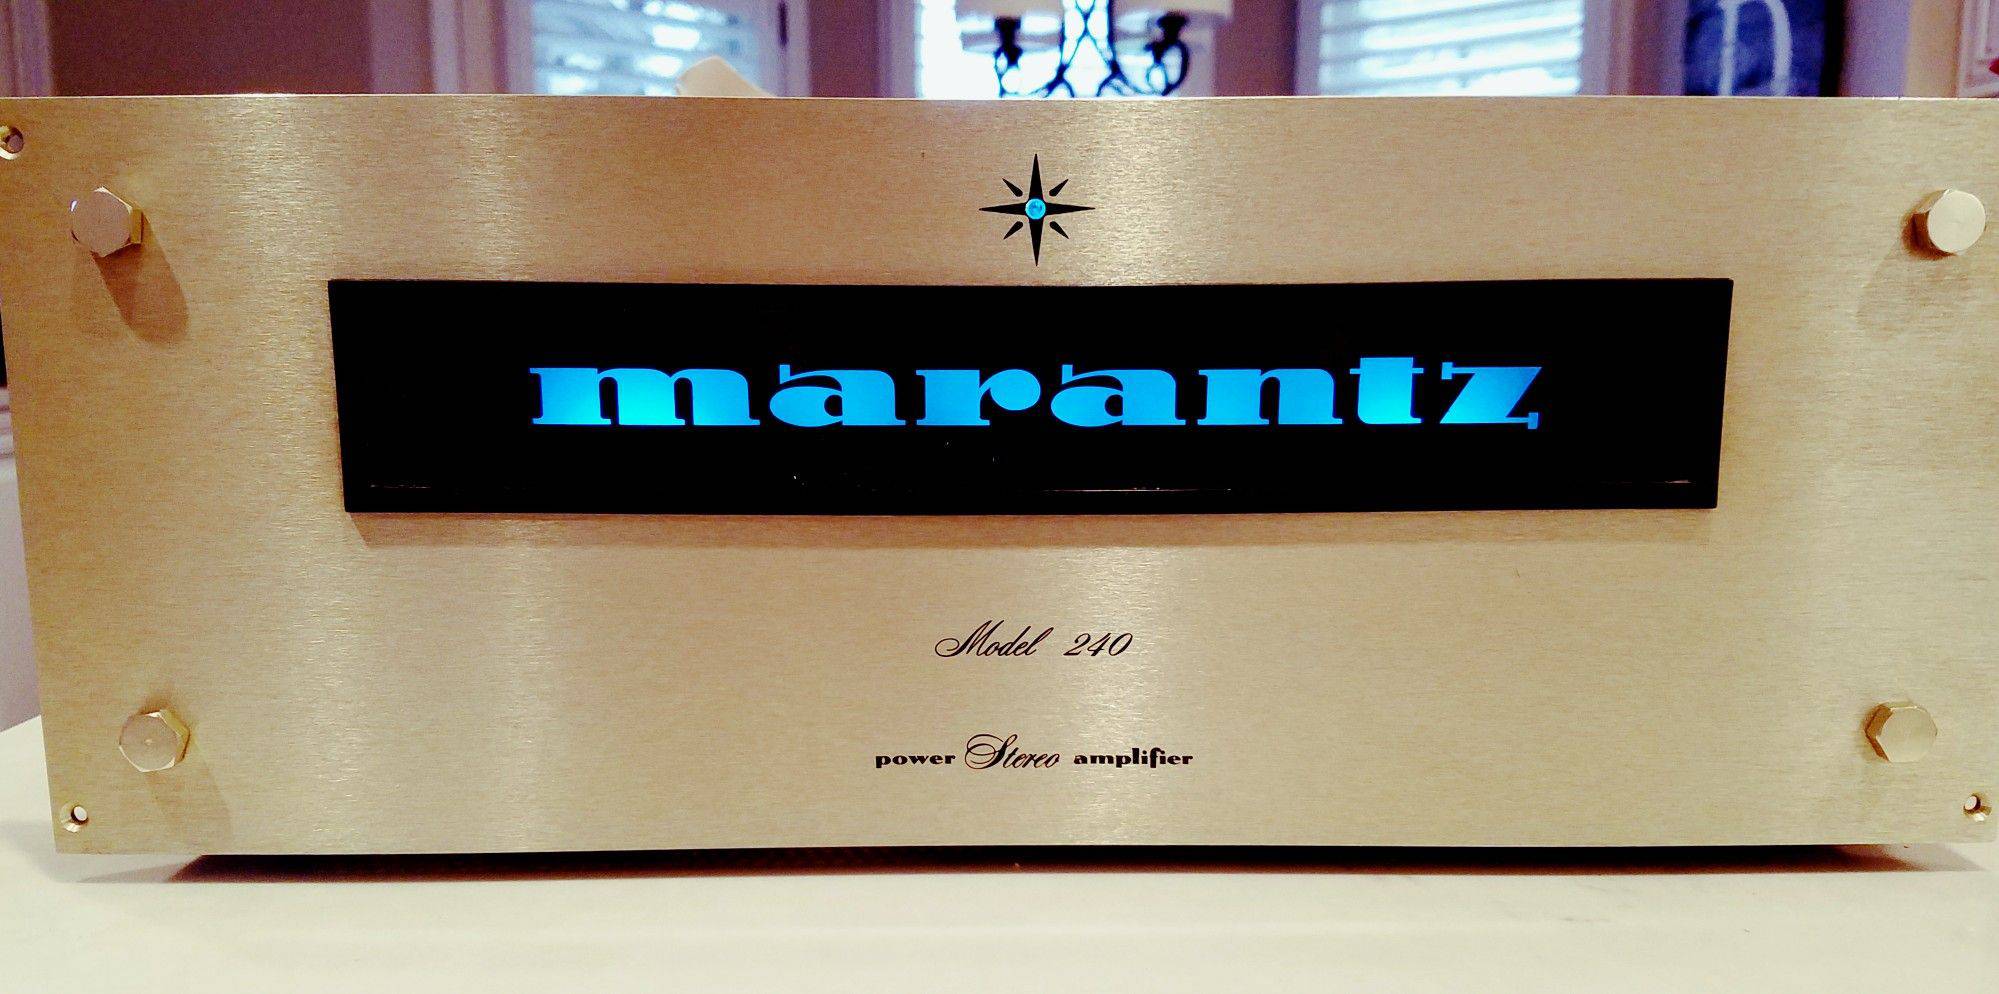 Marantz 240